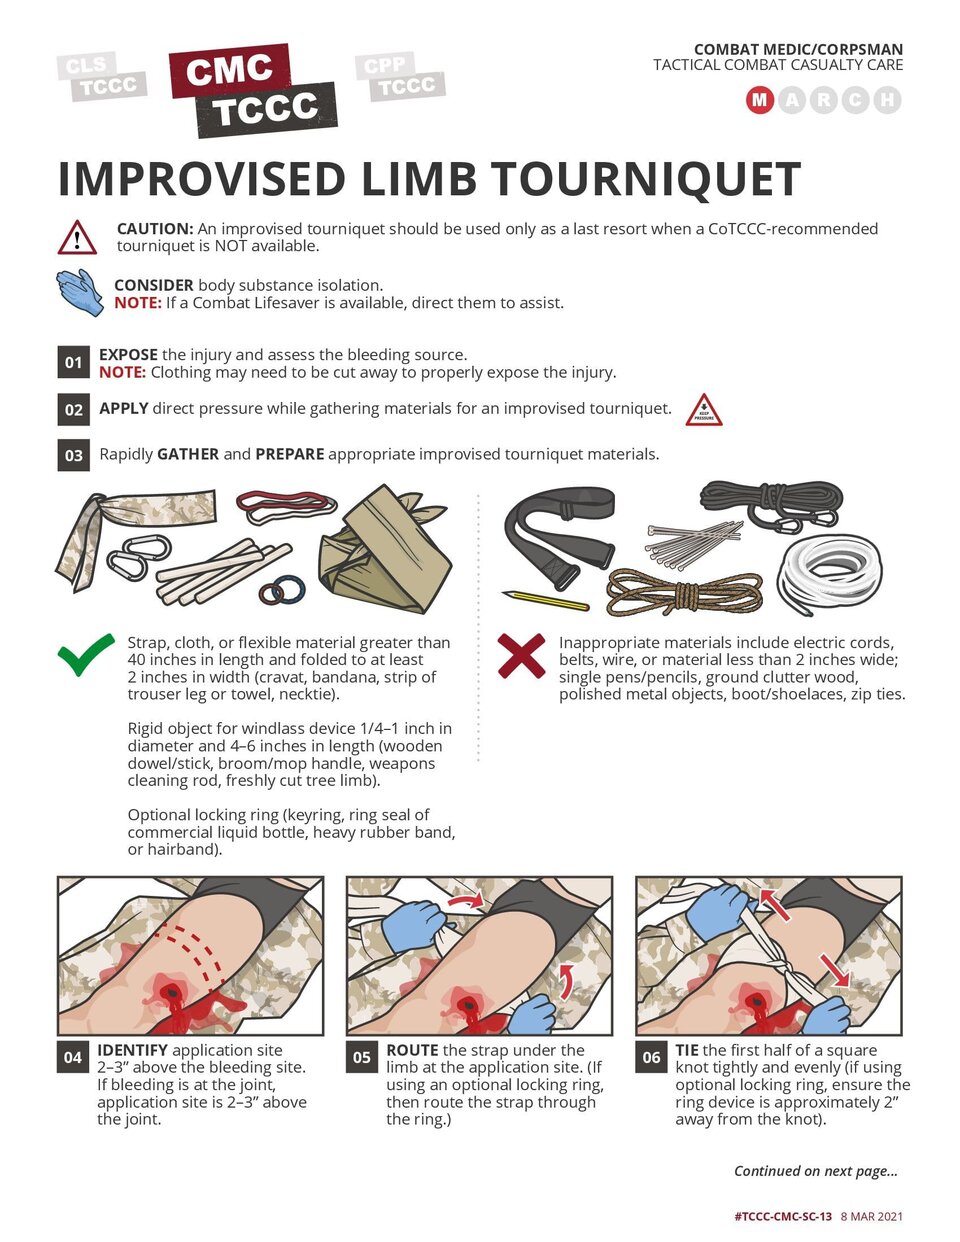 Improvised Limb Tourniquet Application